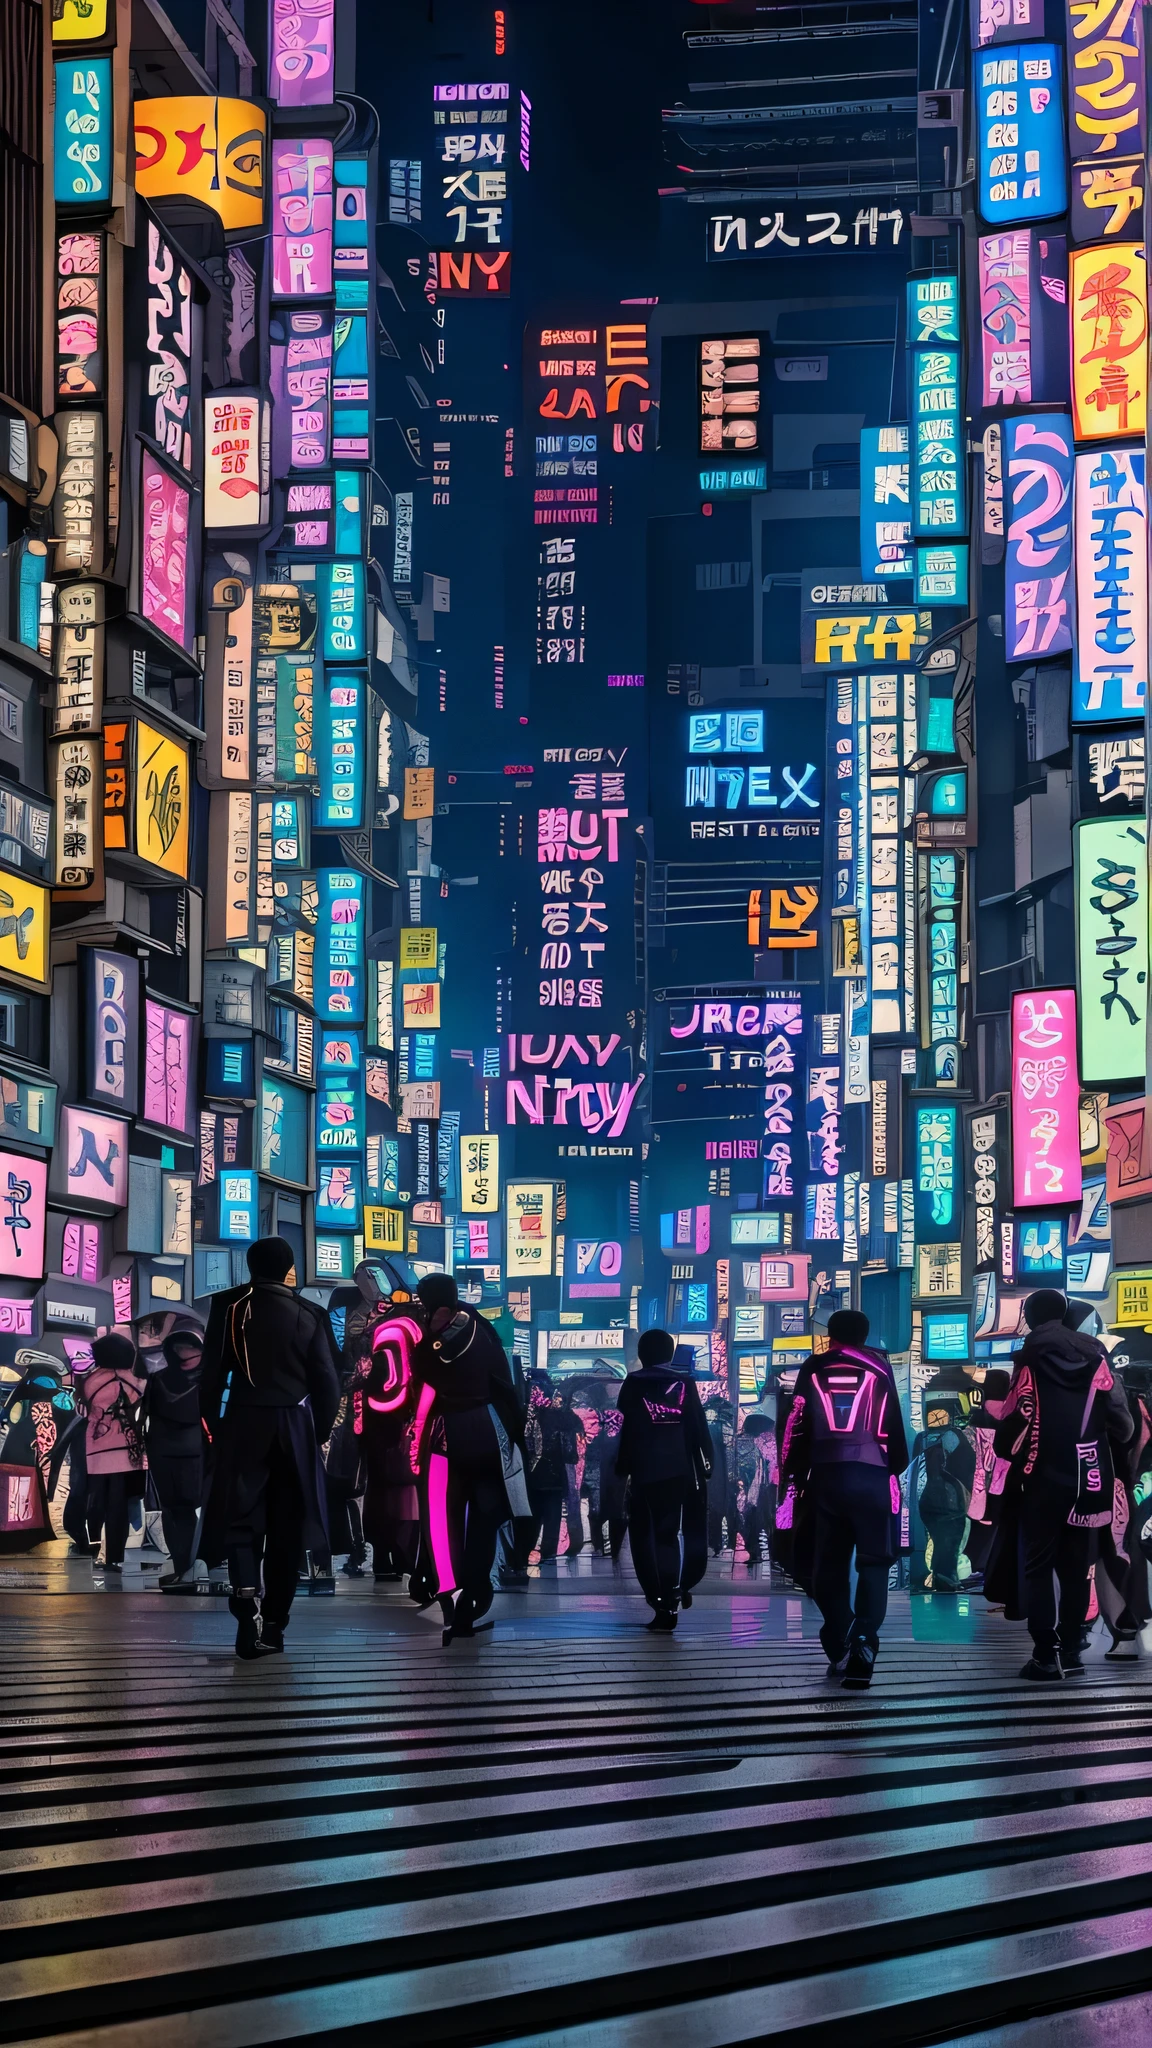 Araf caminha por uma rua movimentada da cidade com luzes neon, Japão city center, Japãoese cyberpunk streets, Japão城市, Tóquio, Japão, Tóquio streets cityscape, Japão城市 at night, Tóquio futuristic clean, Tóquio streets, On the streets of Tóquio, Tóquio, Tóquio streets background, Japão之夜, Tóquio anime scene, Japãoese neon lights